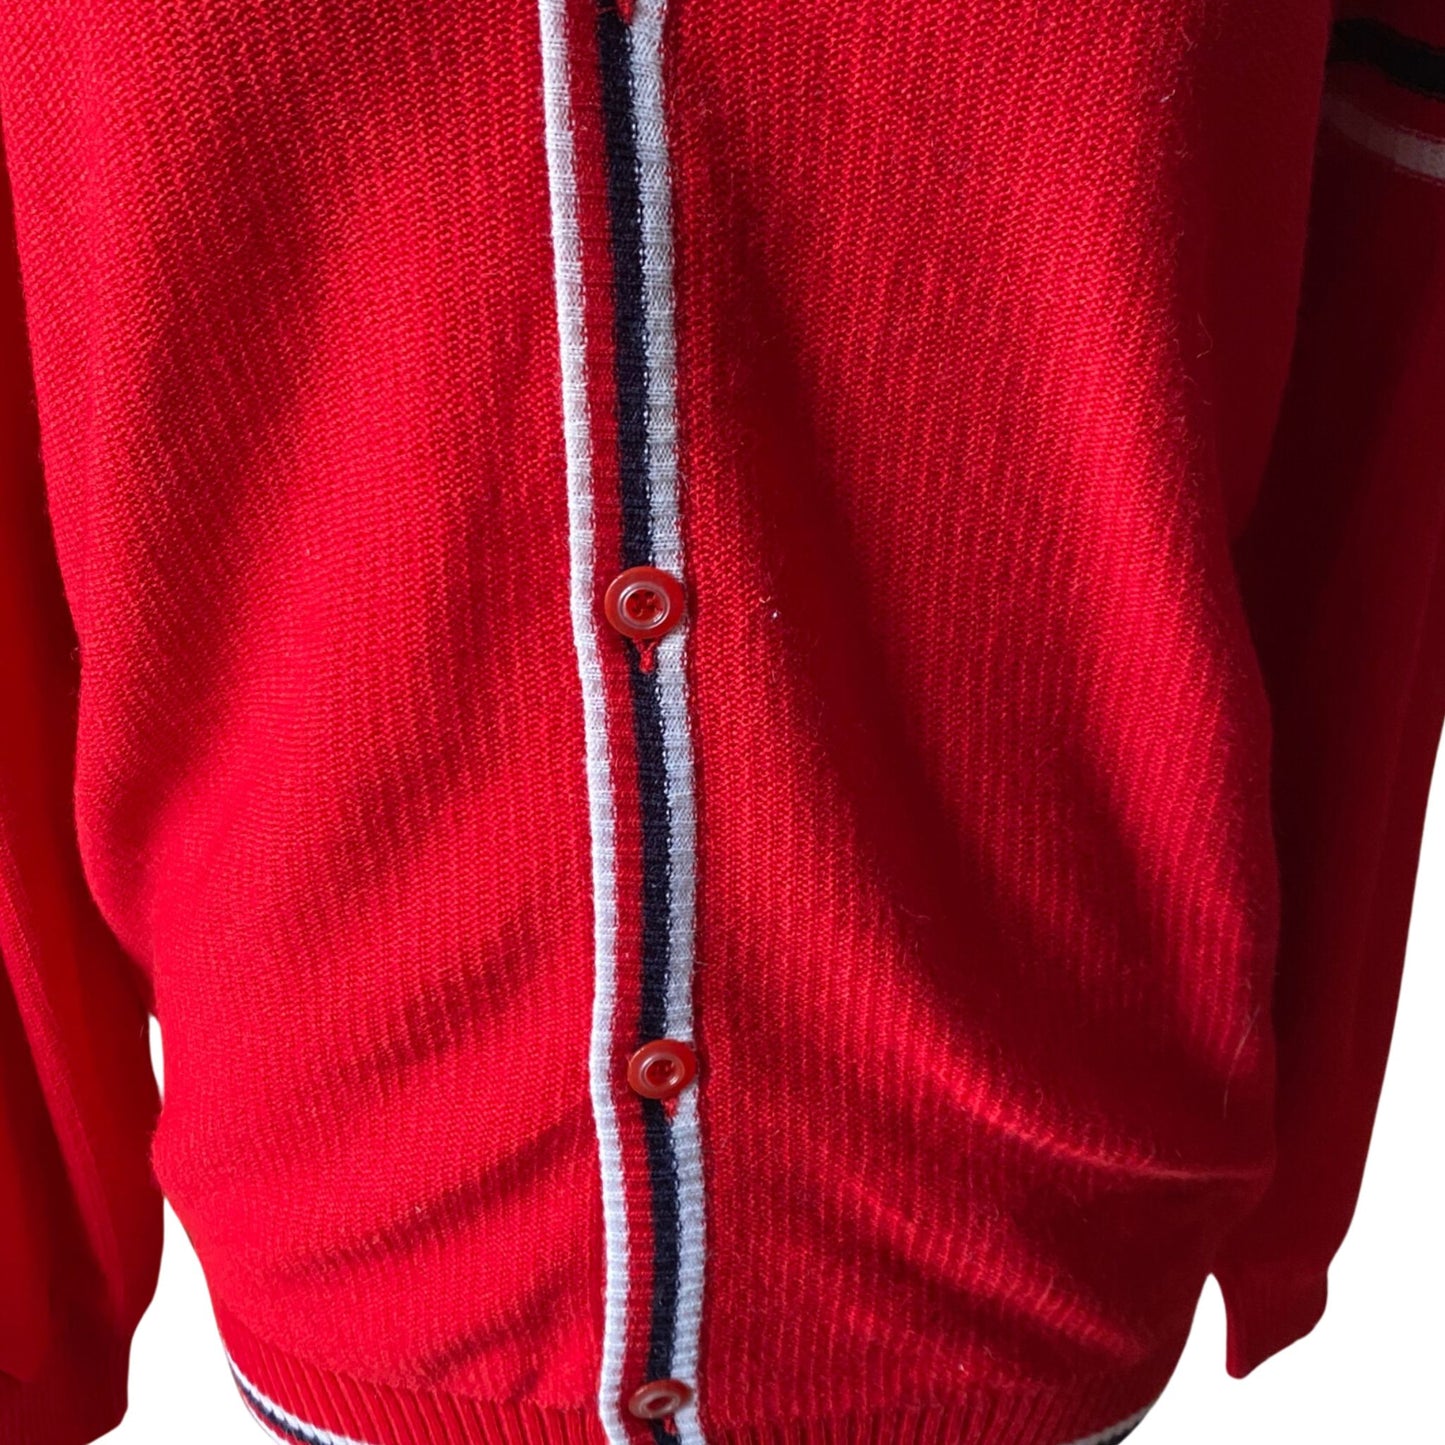 60s Mod Style Red V neck Vintage Cardigan.  Approx UK size 12-16